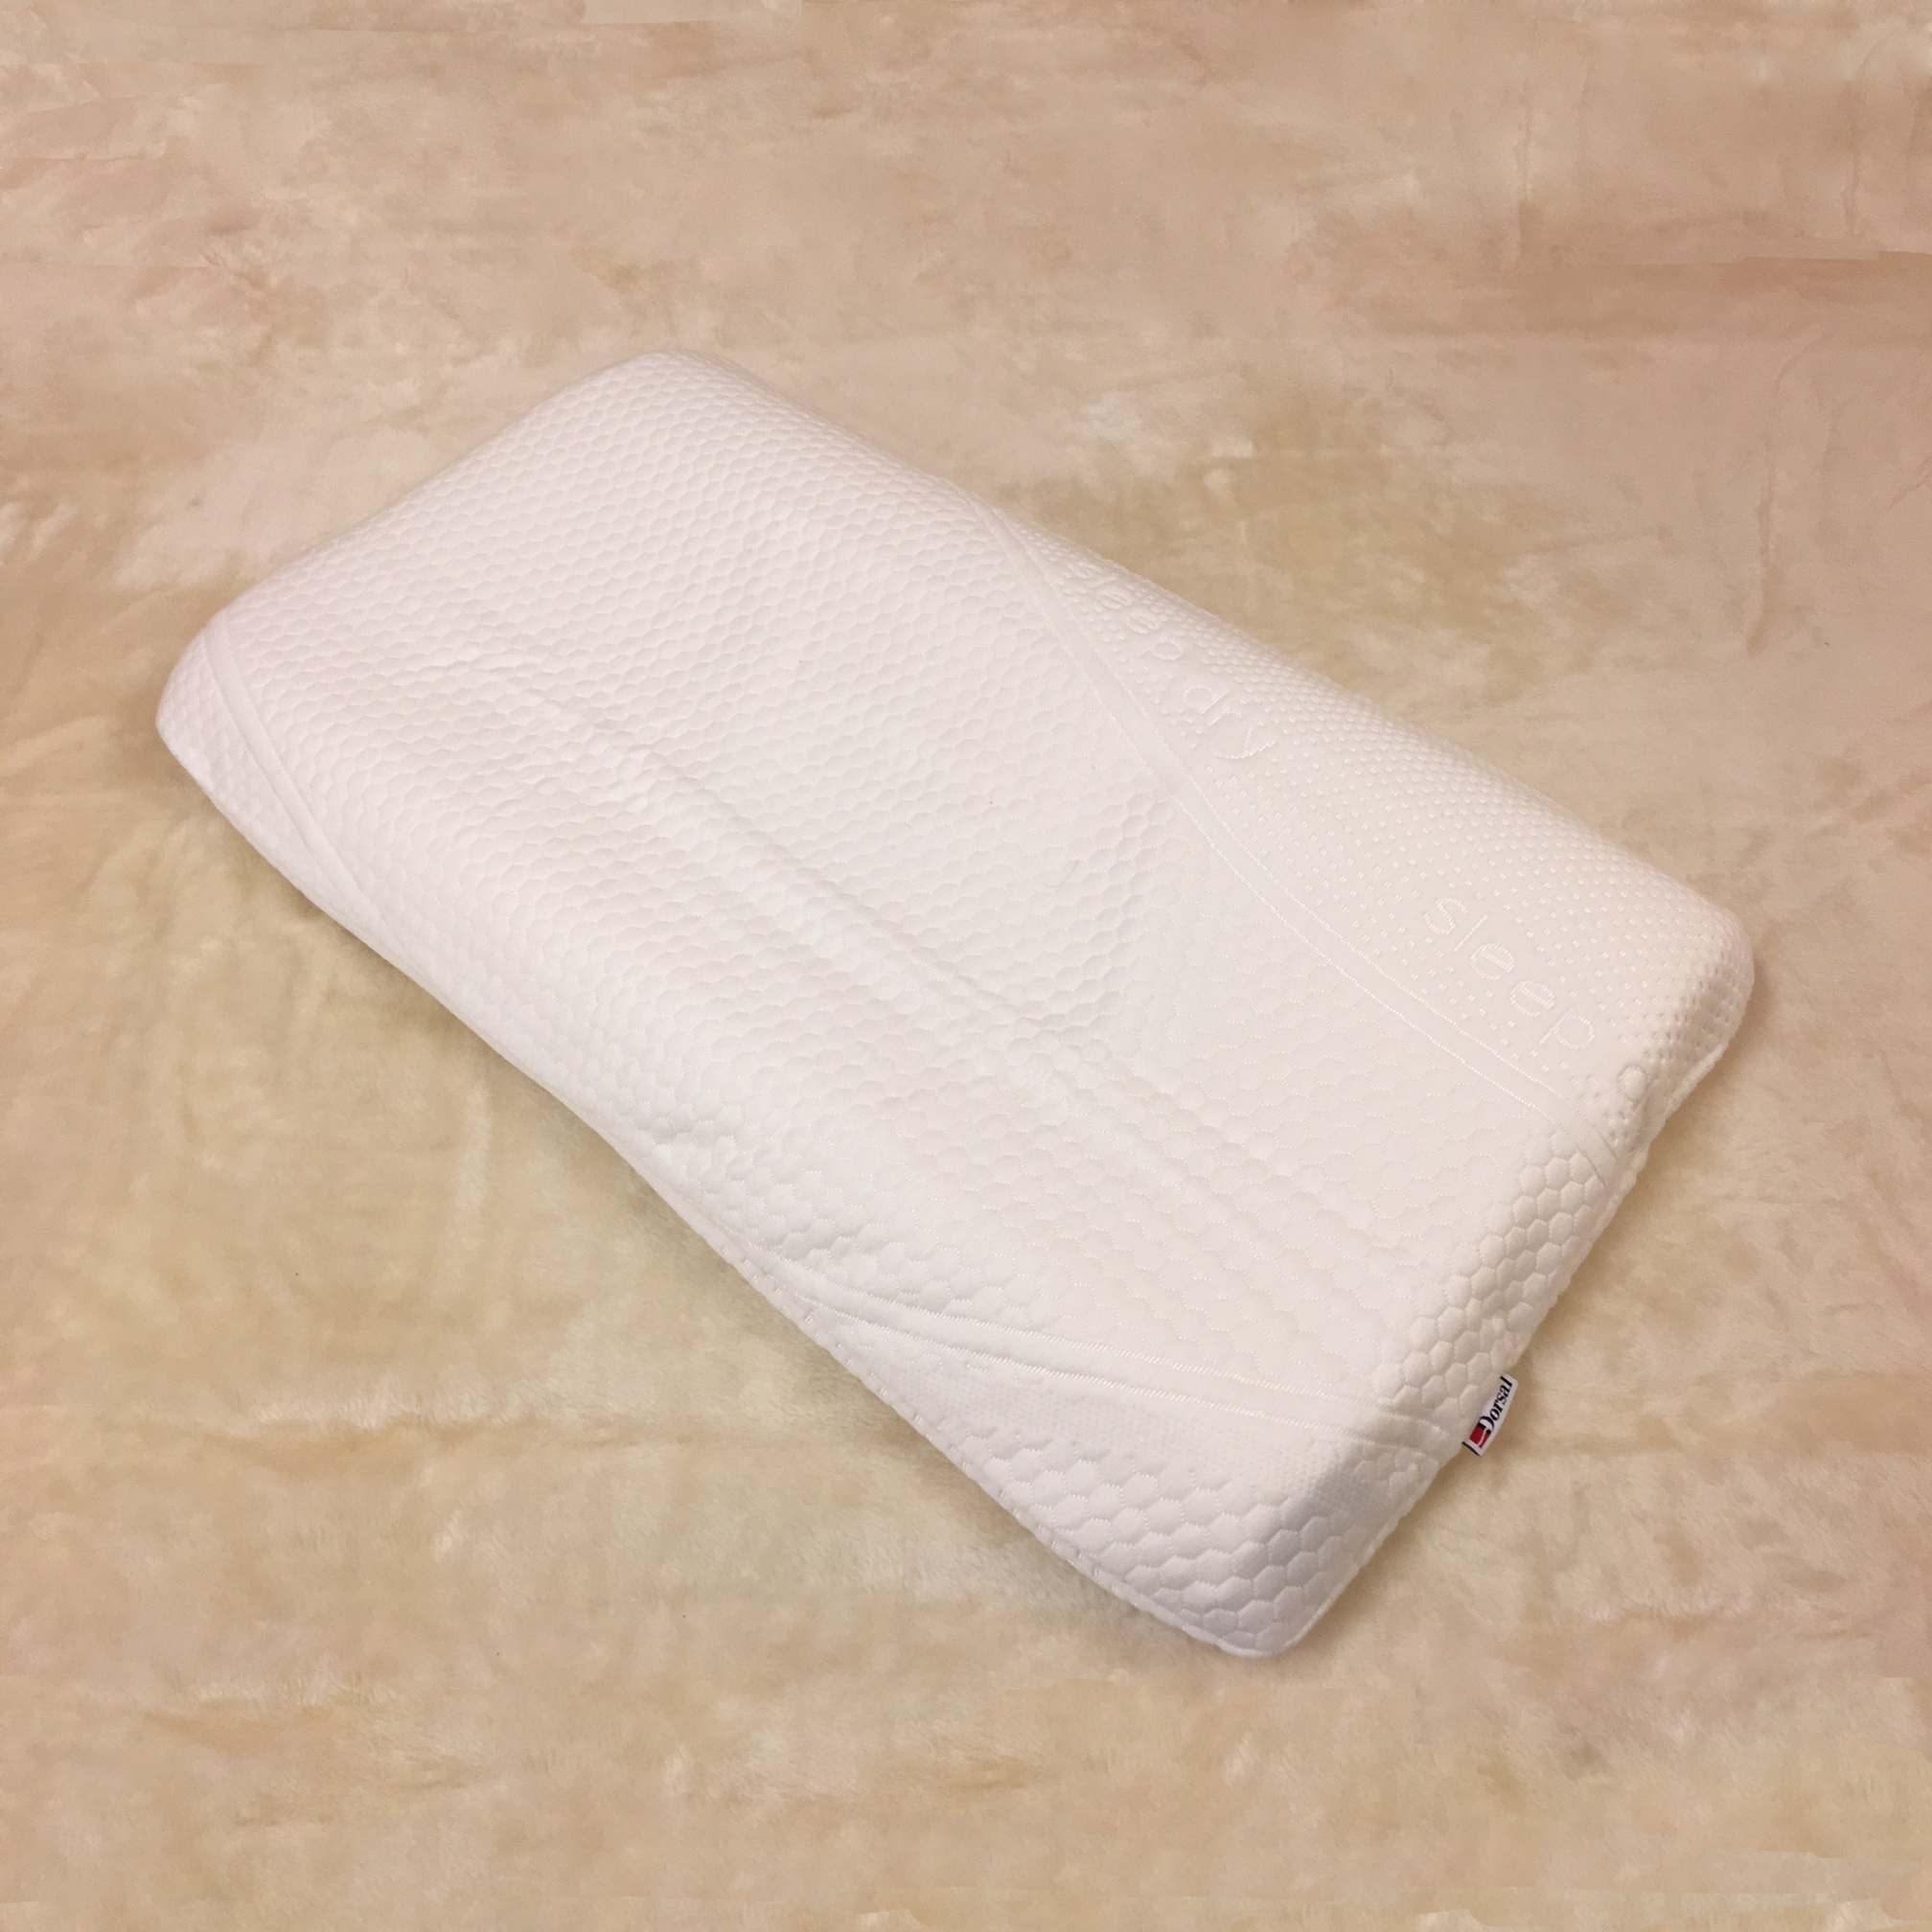  ひまわりオイル枕(6-8cm厚) カバー付き 化学臭のしないヒマワリオイルのフォーム ストレートネックの方に